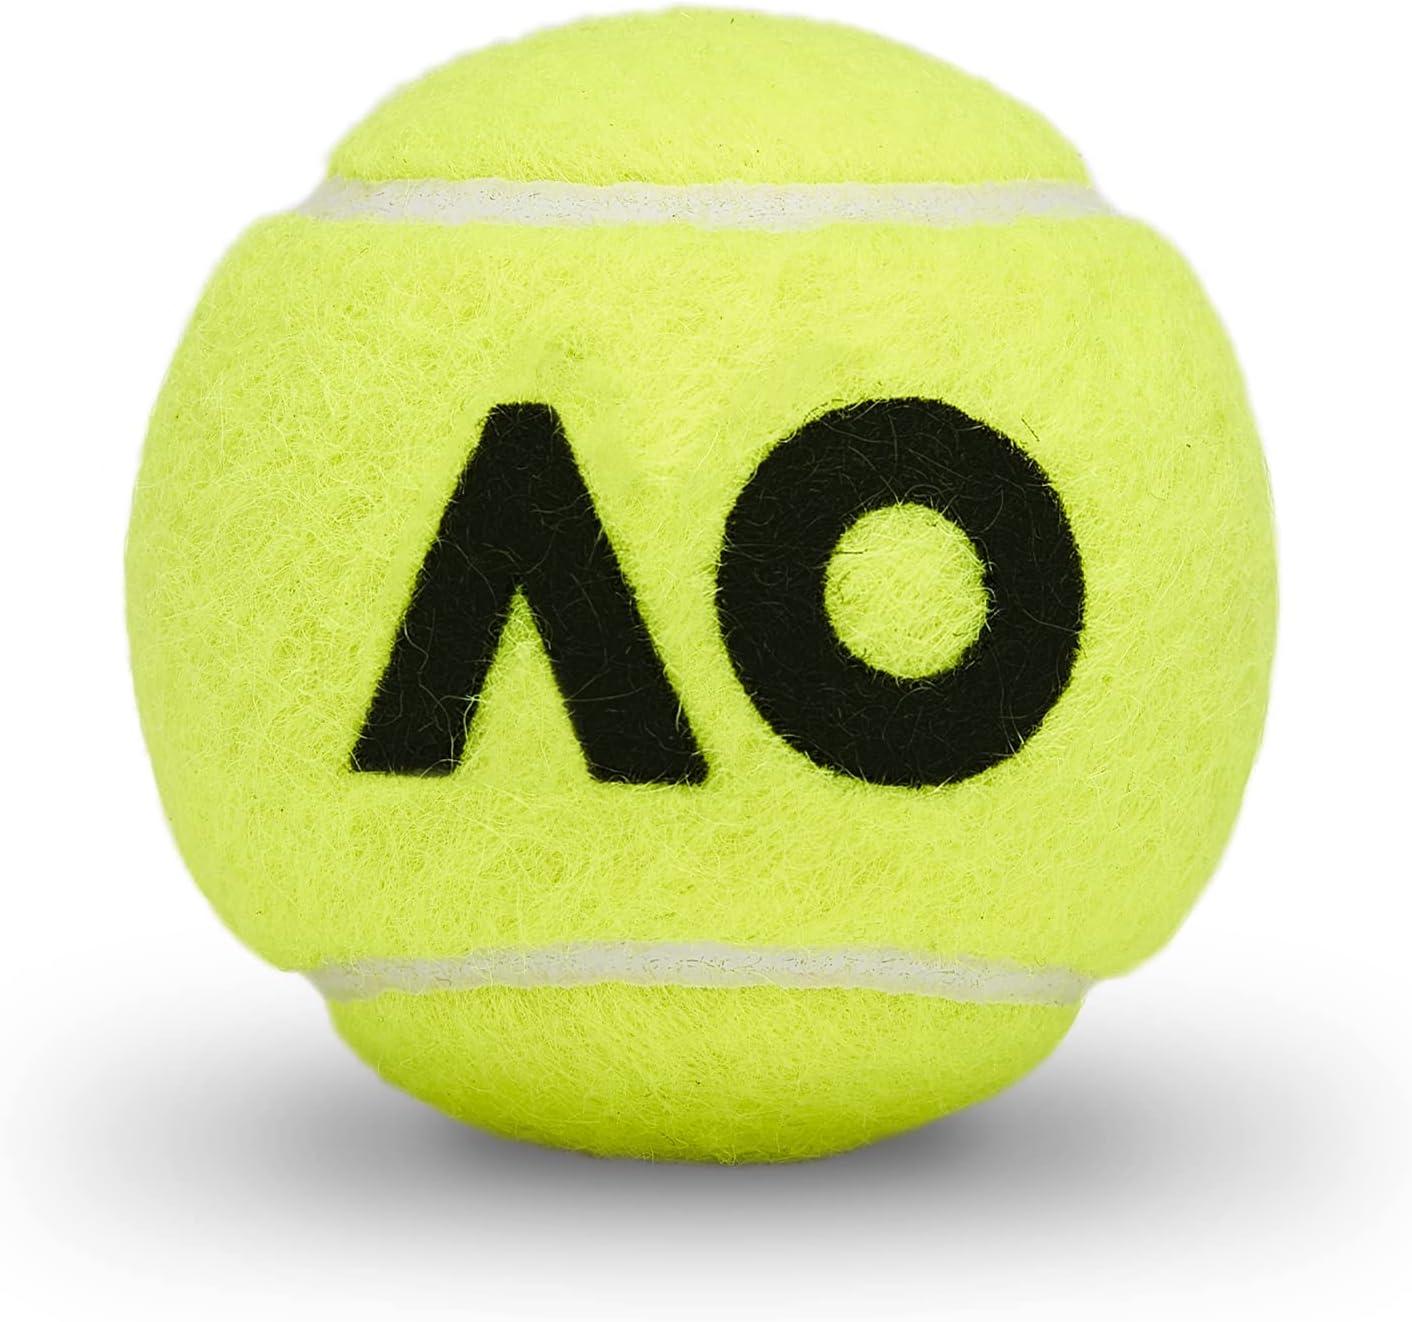 DUNLOP Tennis Ball Australian Open - for Clay, Hard Court and Grass